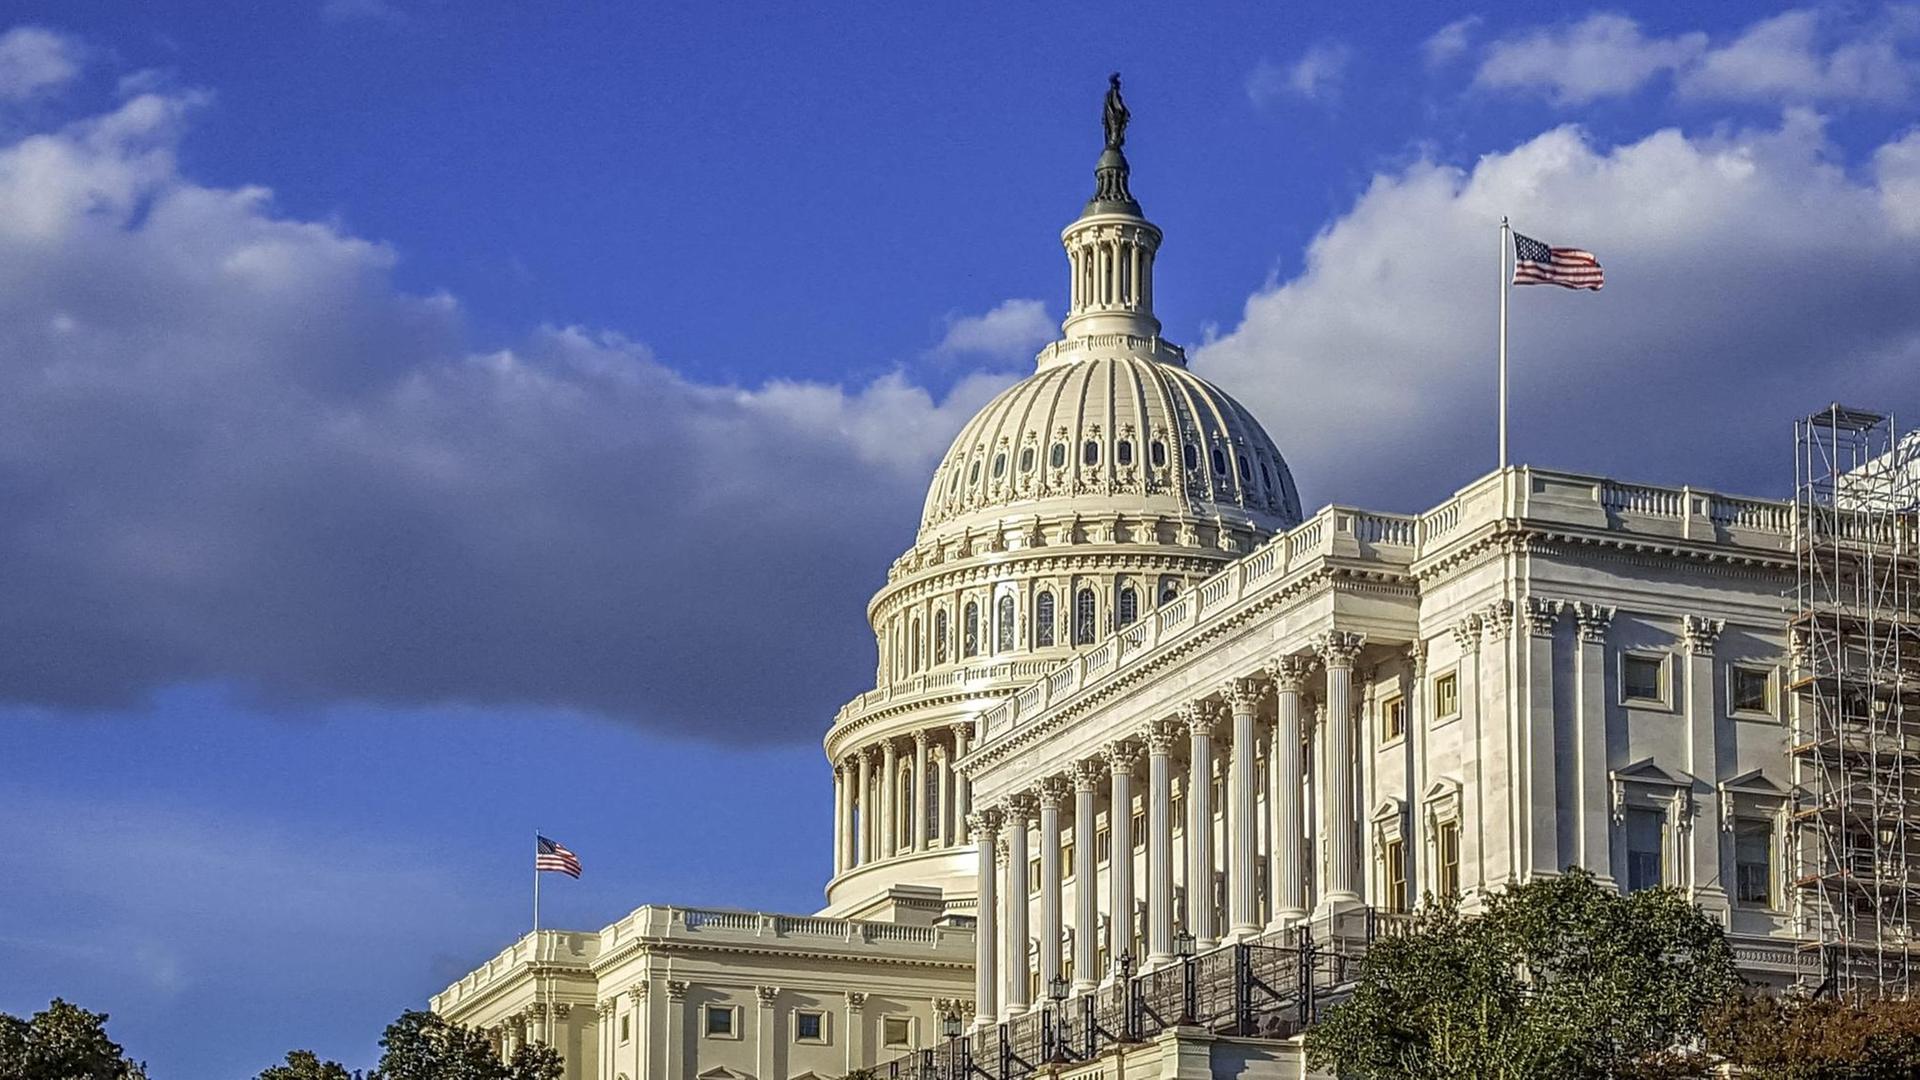 Blick auf das Kapitol in Washington. Das Kapitol ist der Sitz des US-Kongresses.